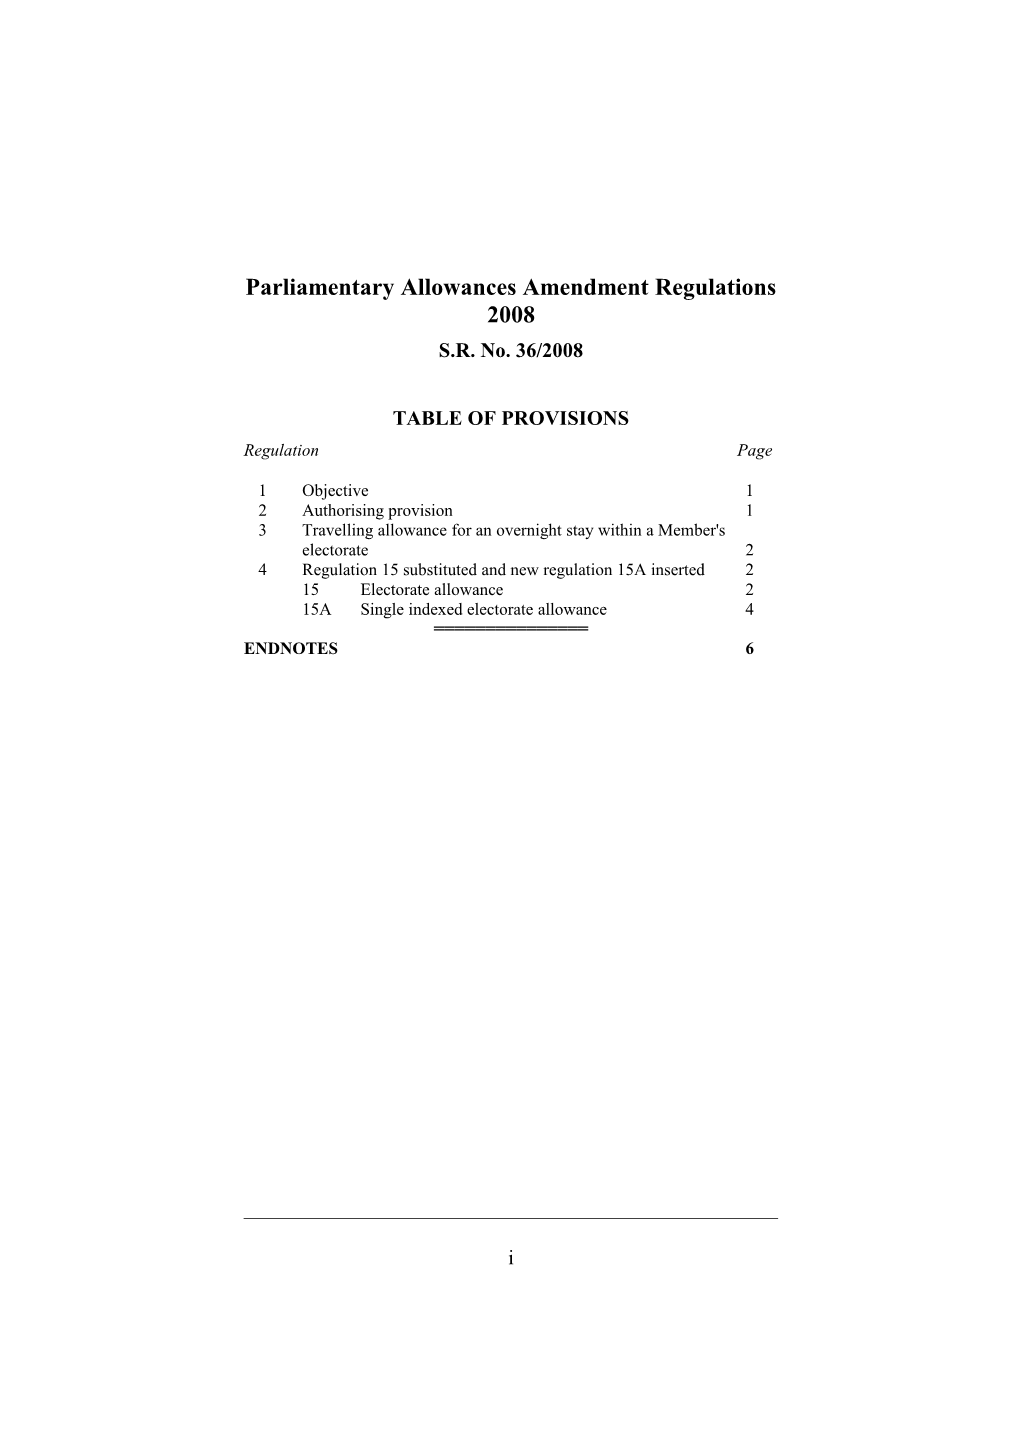 Parliamentary Allowances Amendment Regulations 2008